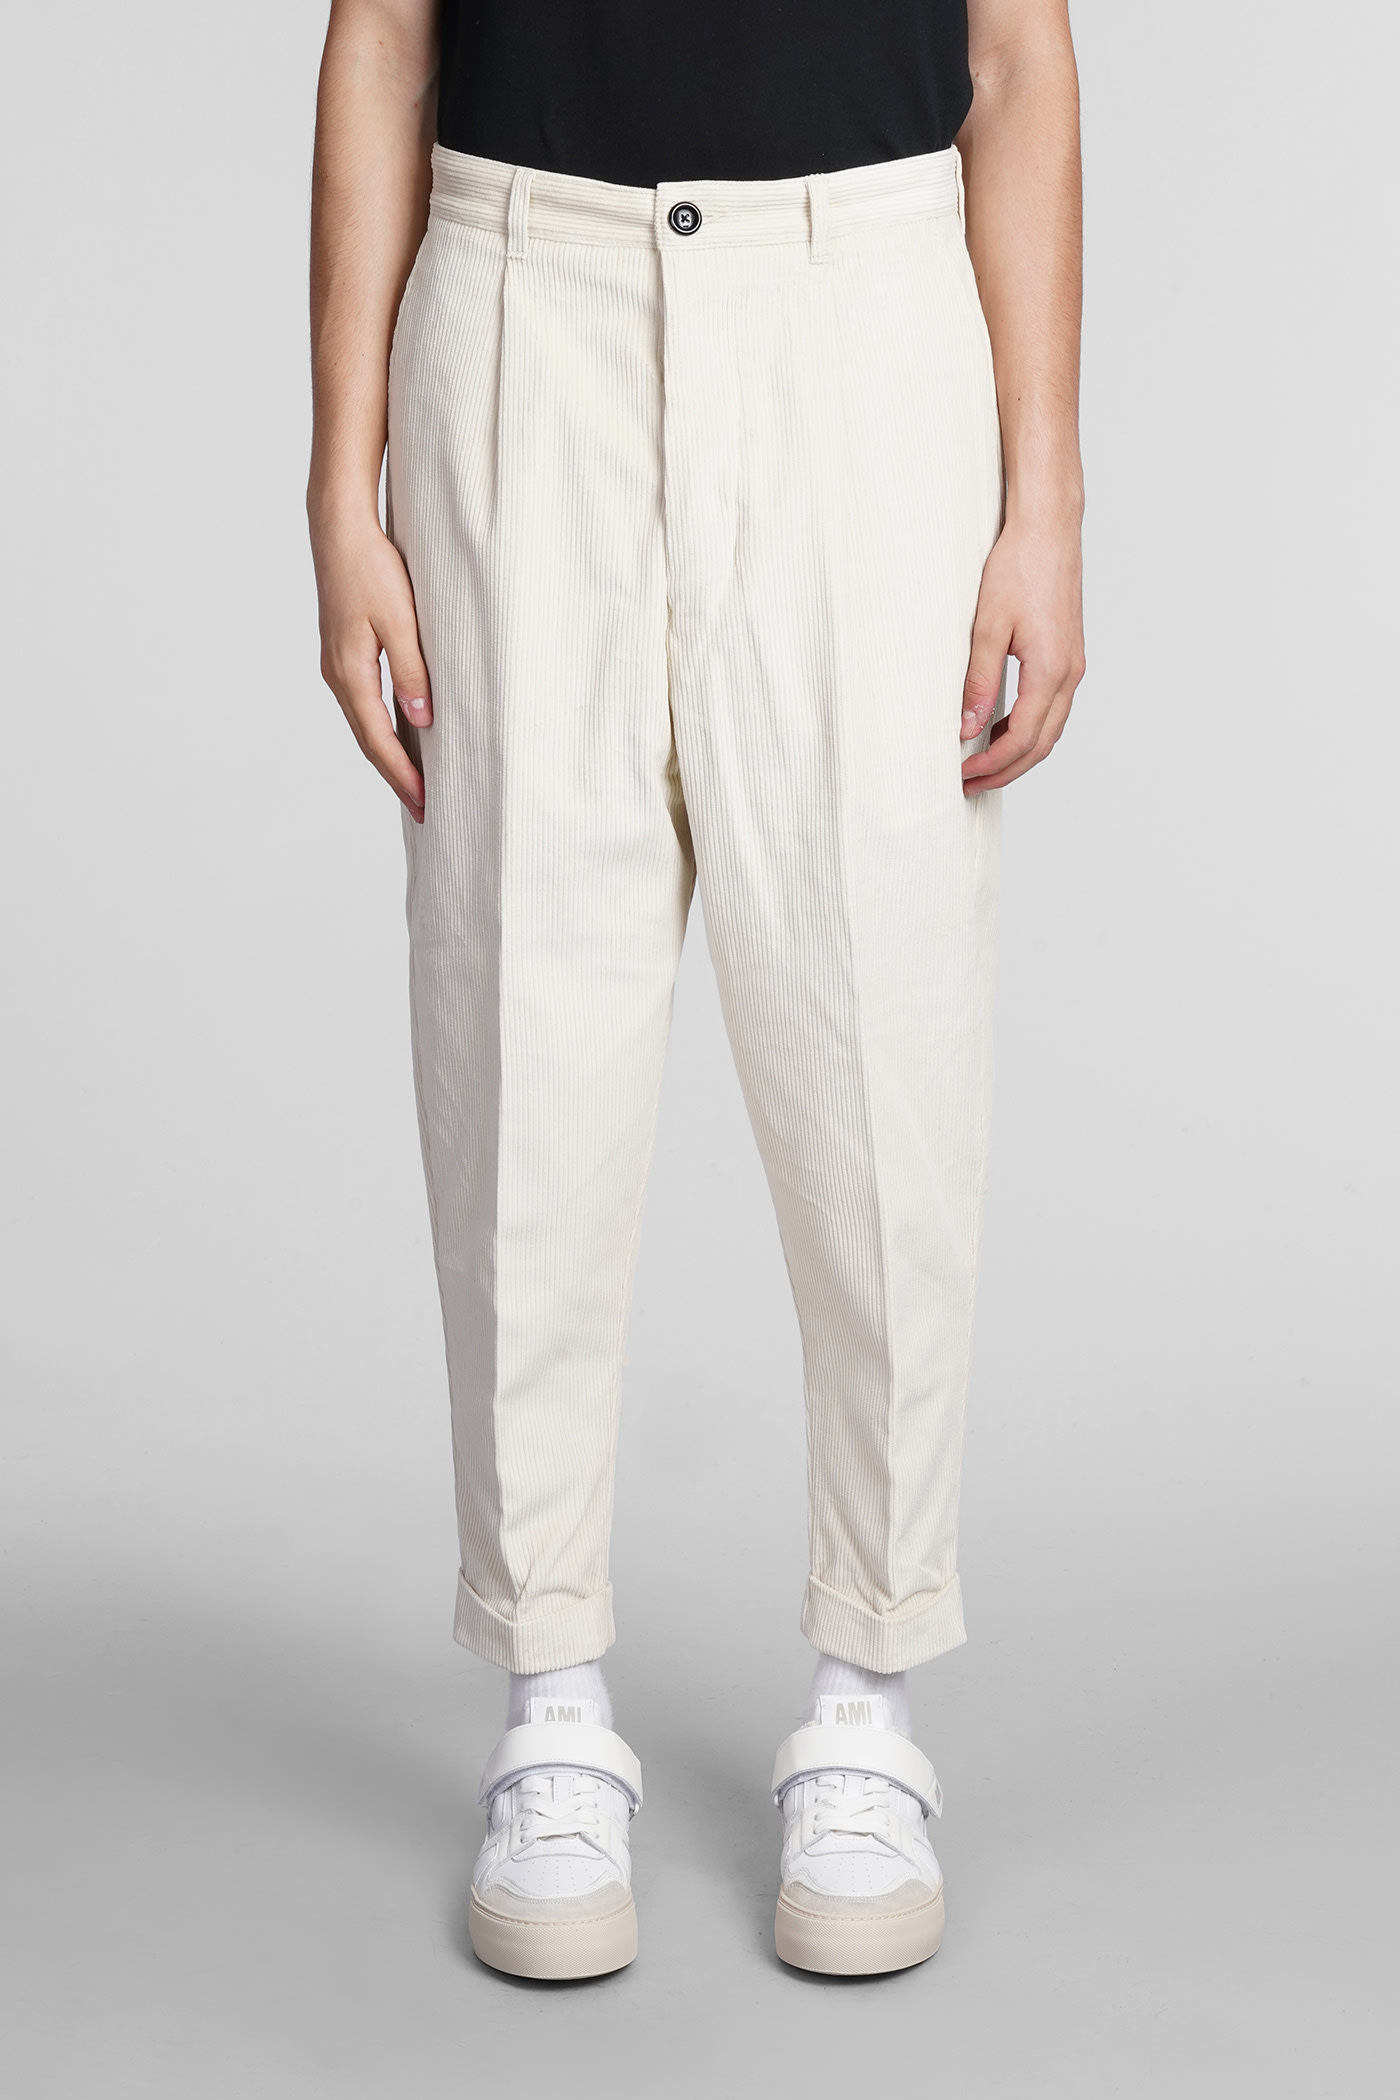 Ami Alexandre Mattiussi Pants In White Cotton